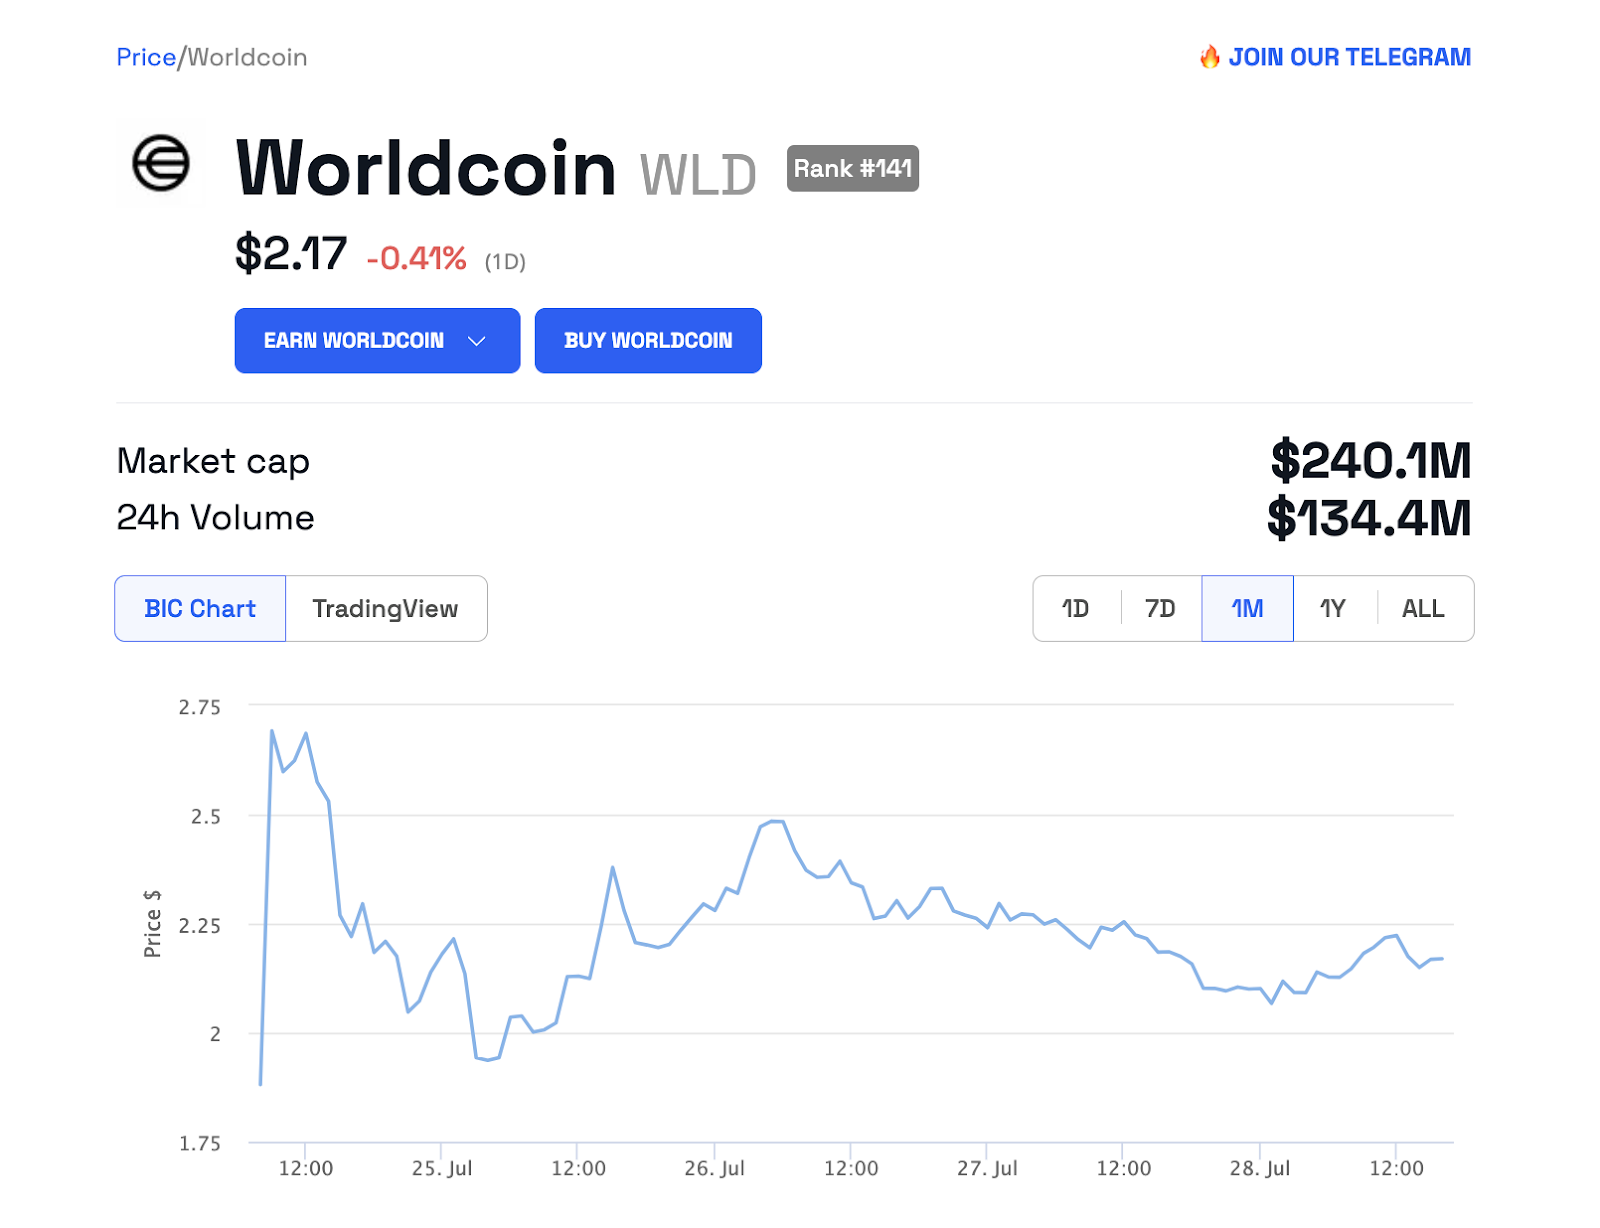 Worldcoin (WLD) price